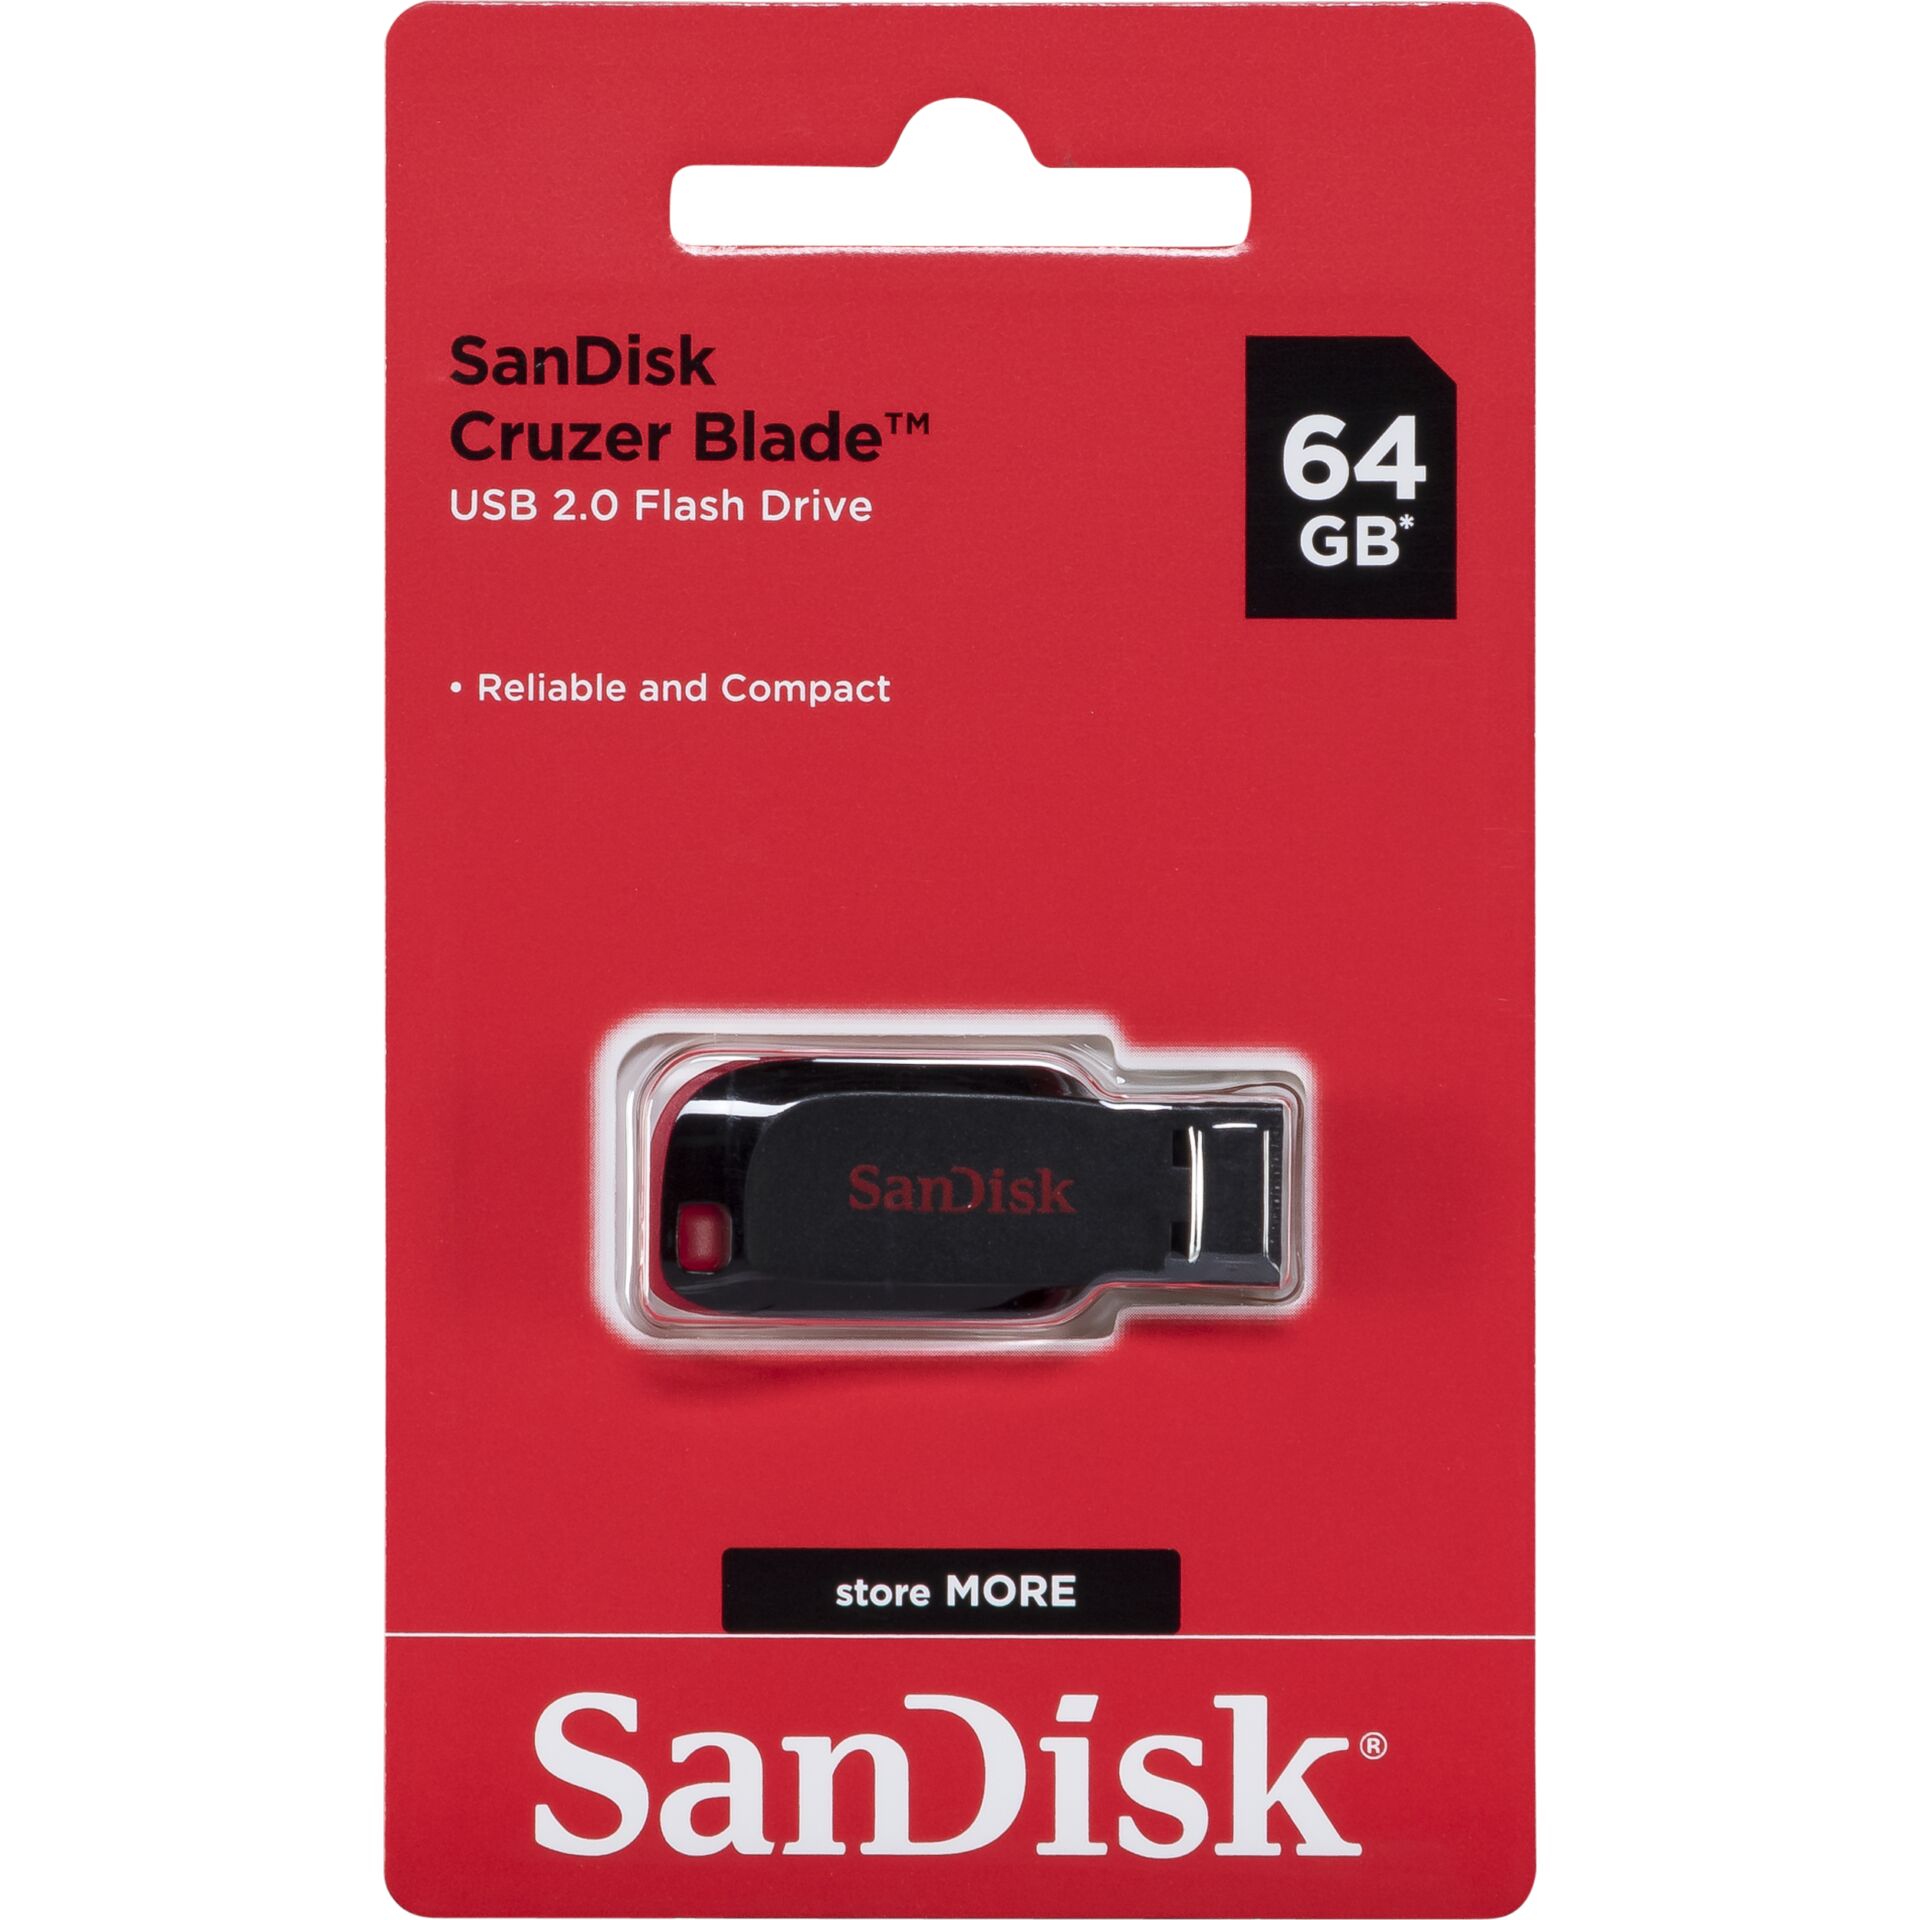 64 GB SanDisk Cruzer Blade USB 2.0 Stick 